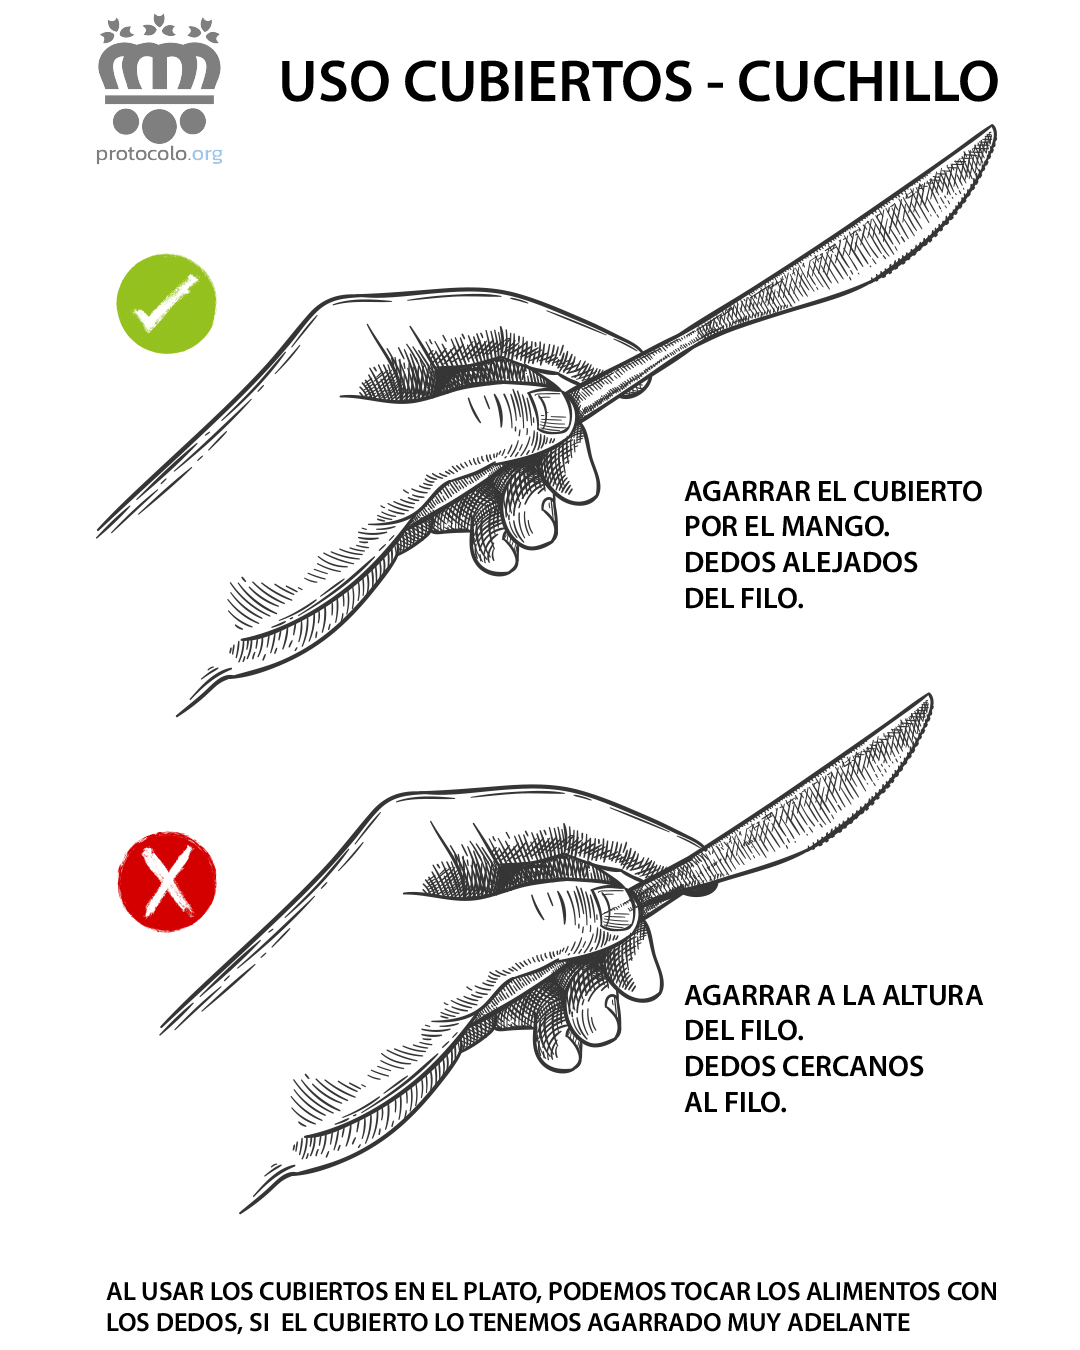 Por qué lado se sujeta el cuchillo